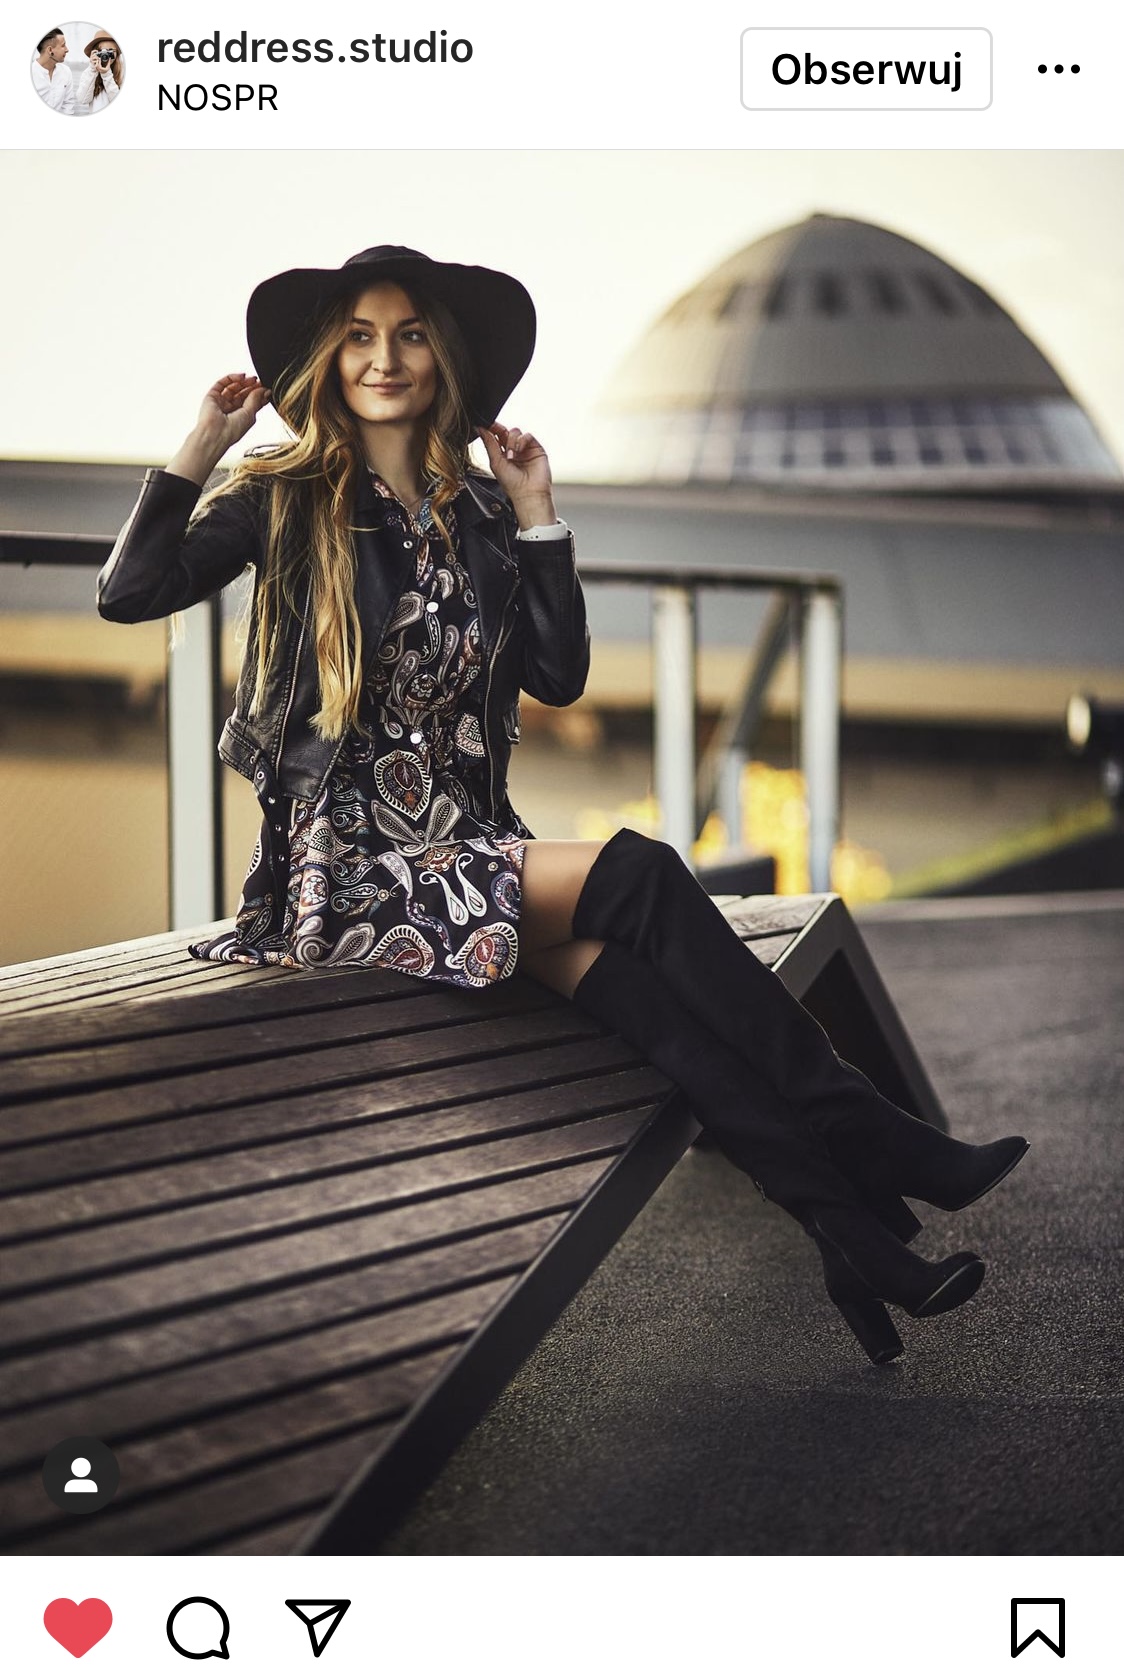 Pięknie ubrana dziewczyna w kapeluszu siedzi na ławce, w tle kopuła kosmiczna #śląsktakipiękny